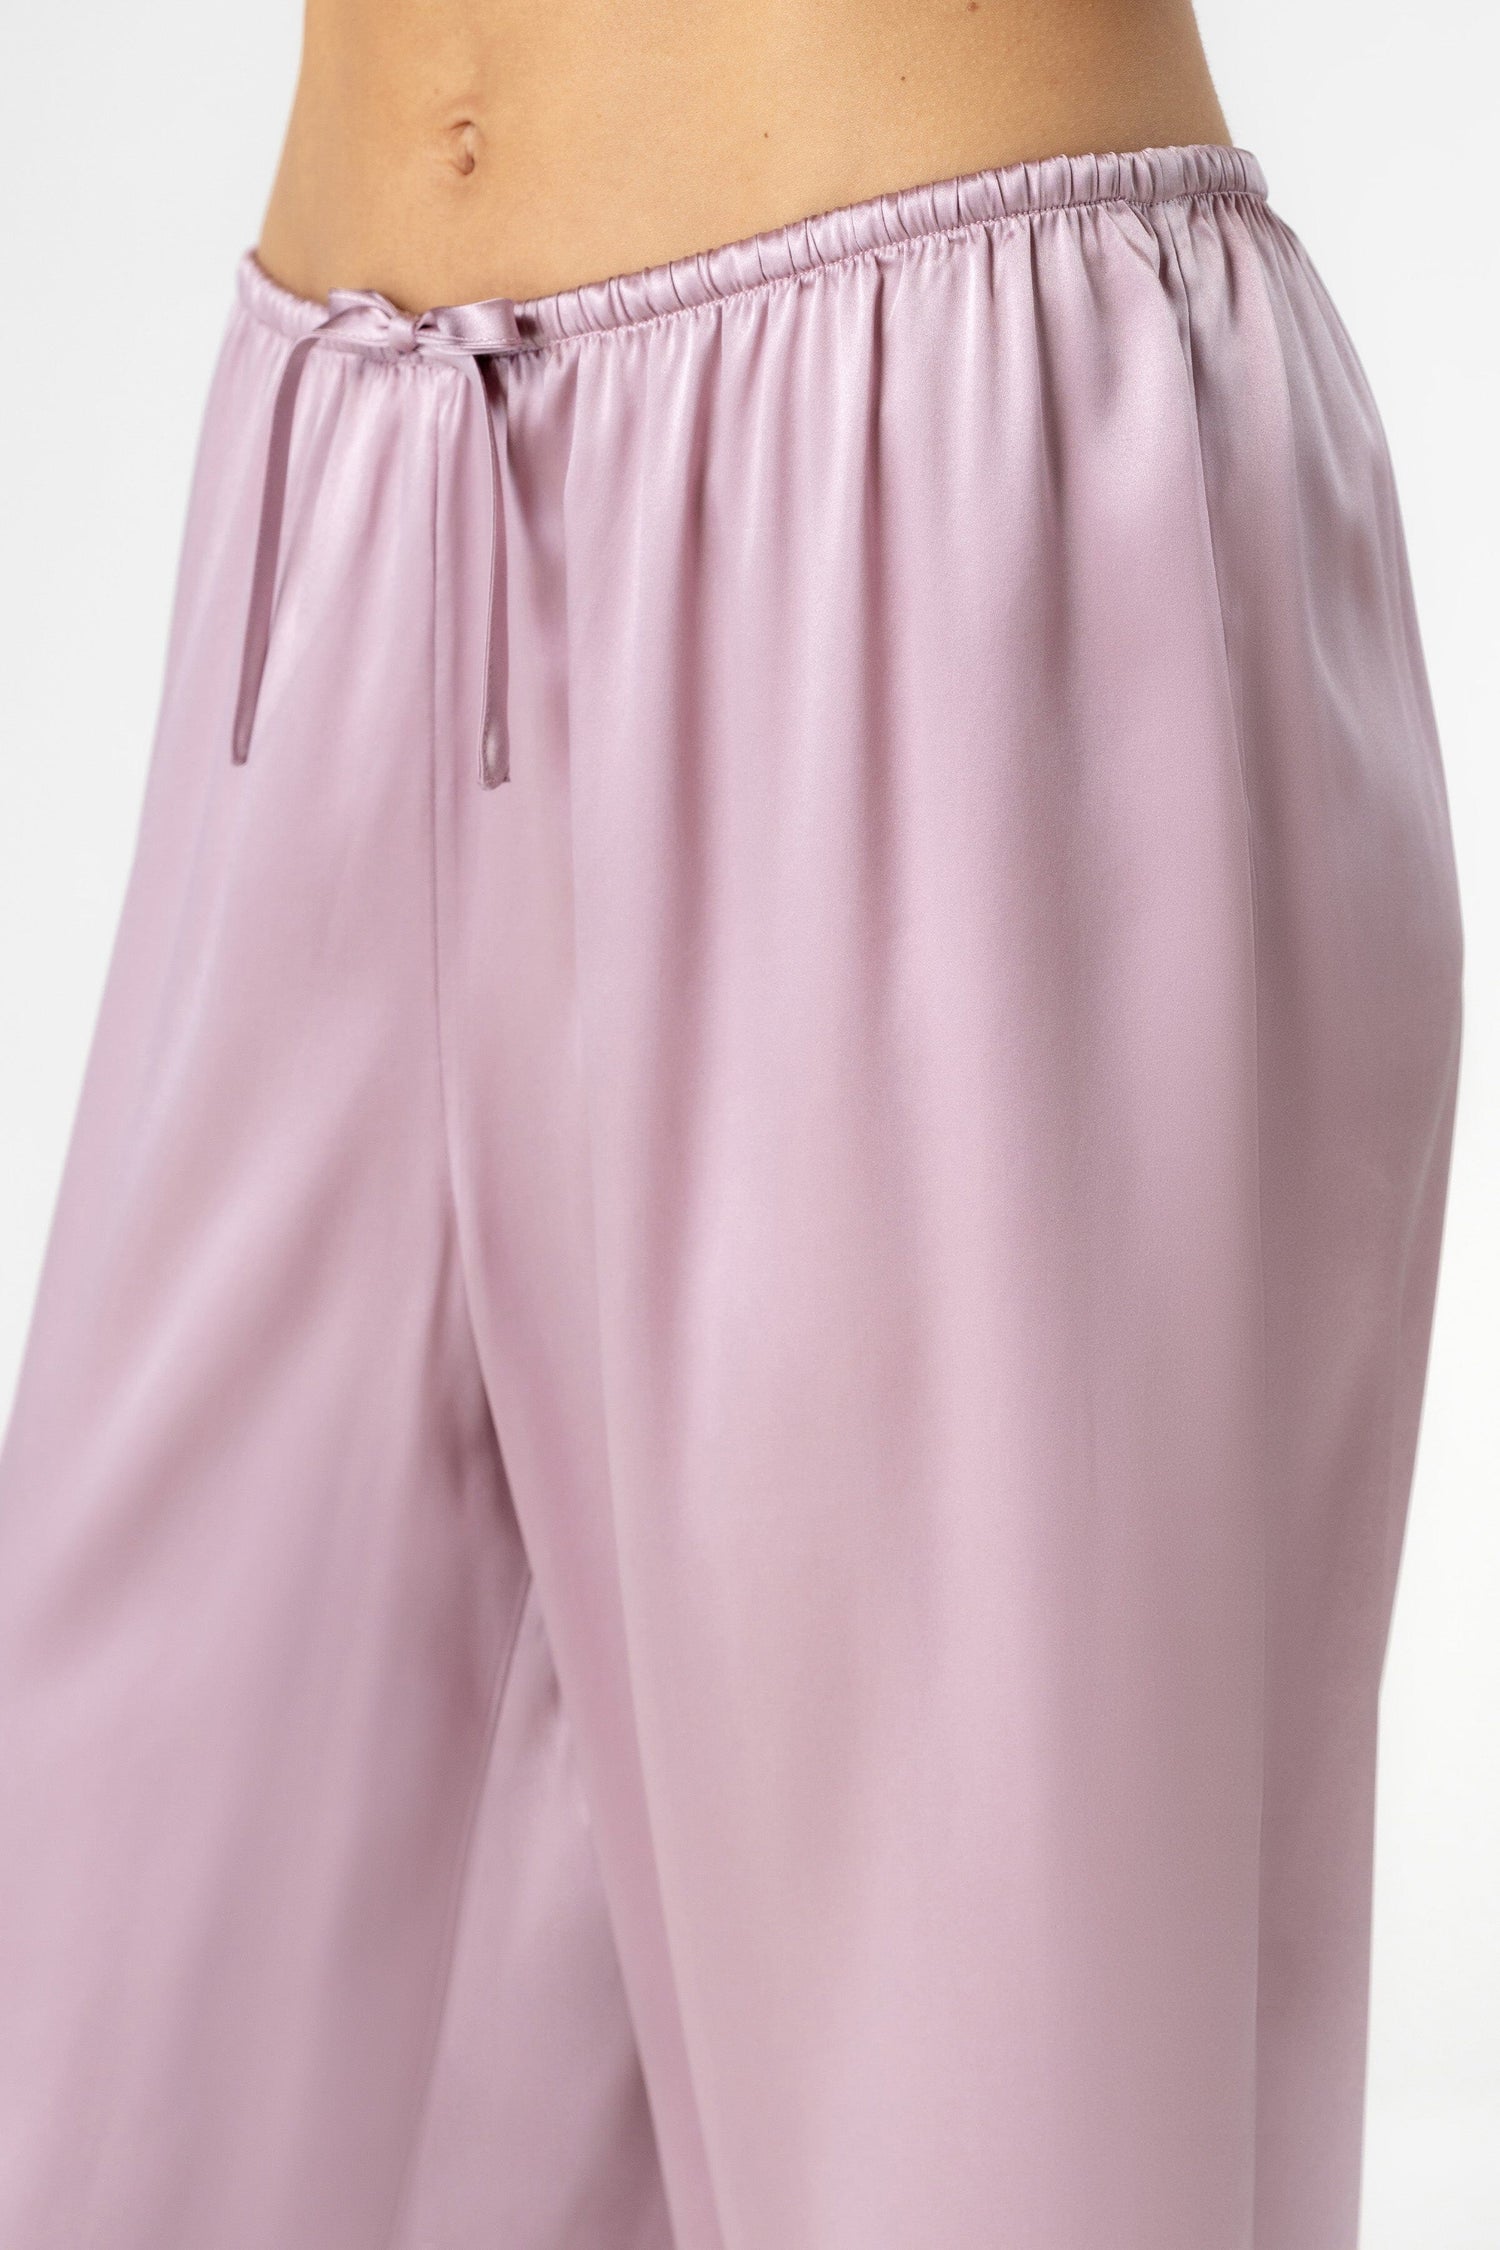 Pink Silk Bralette PJ Loungewear Set